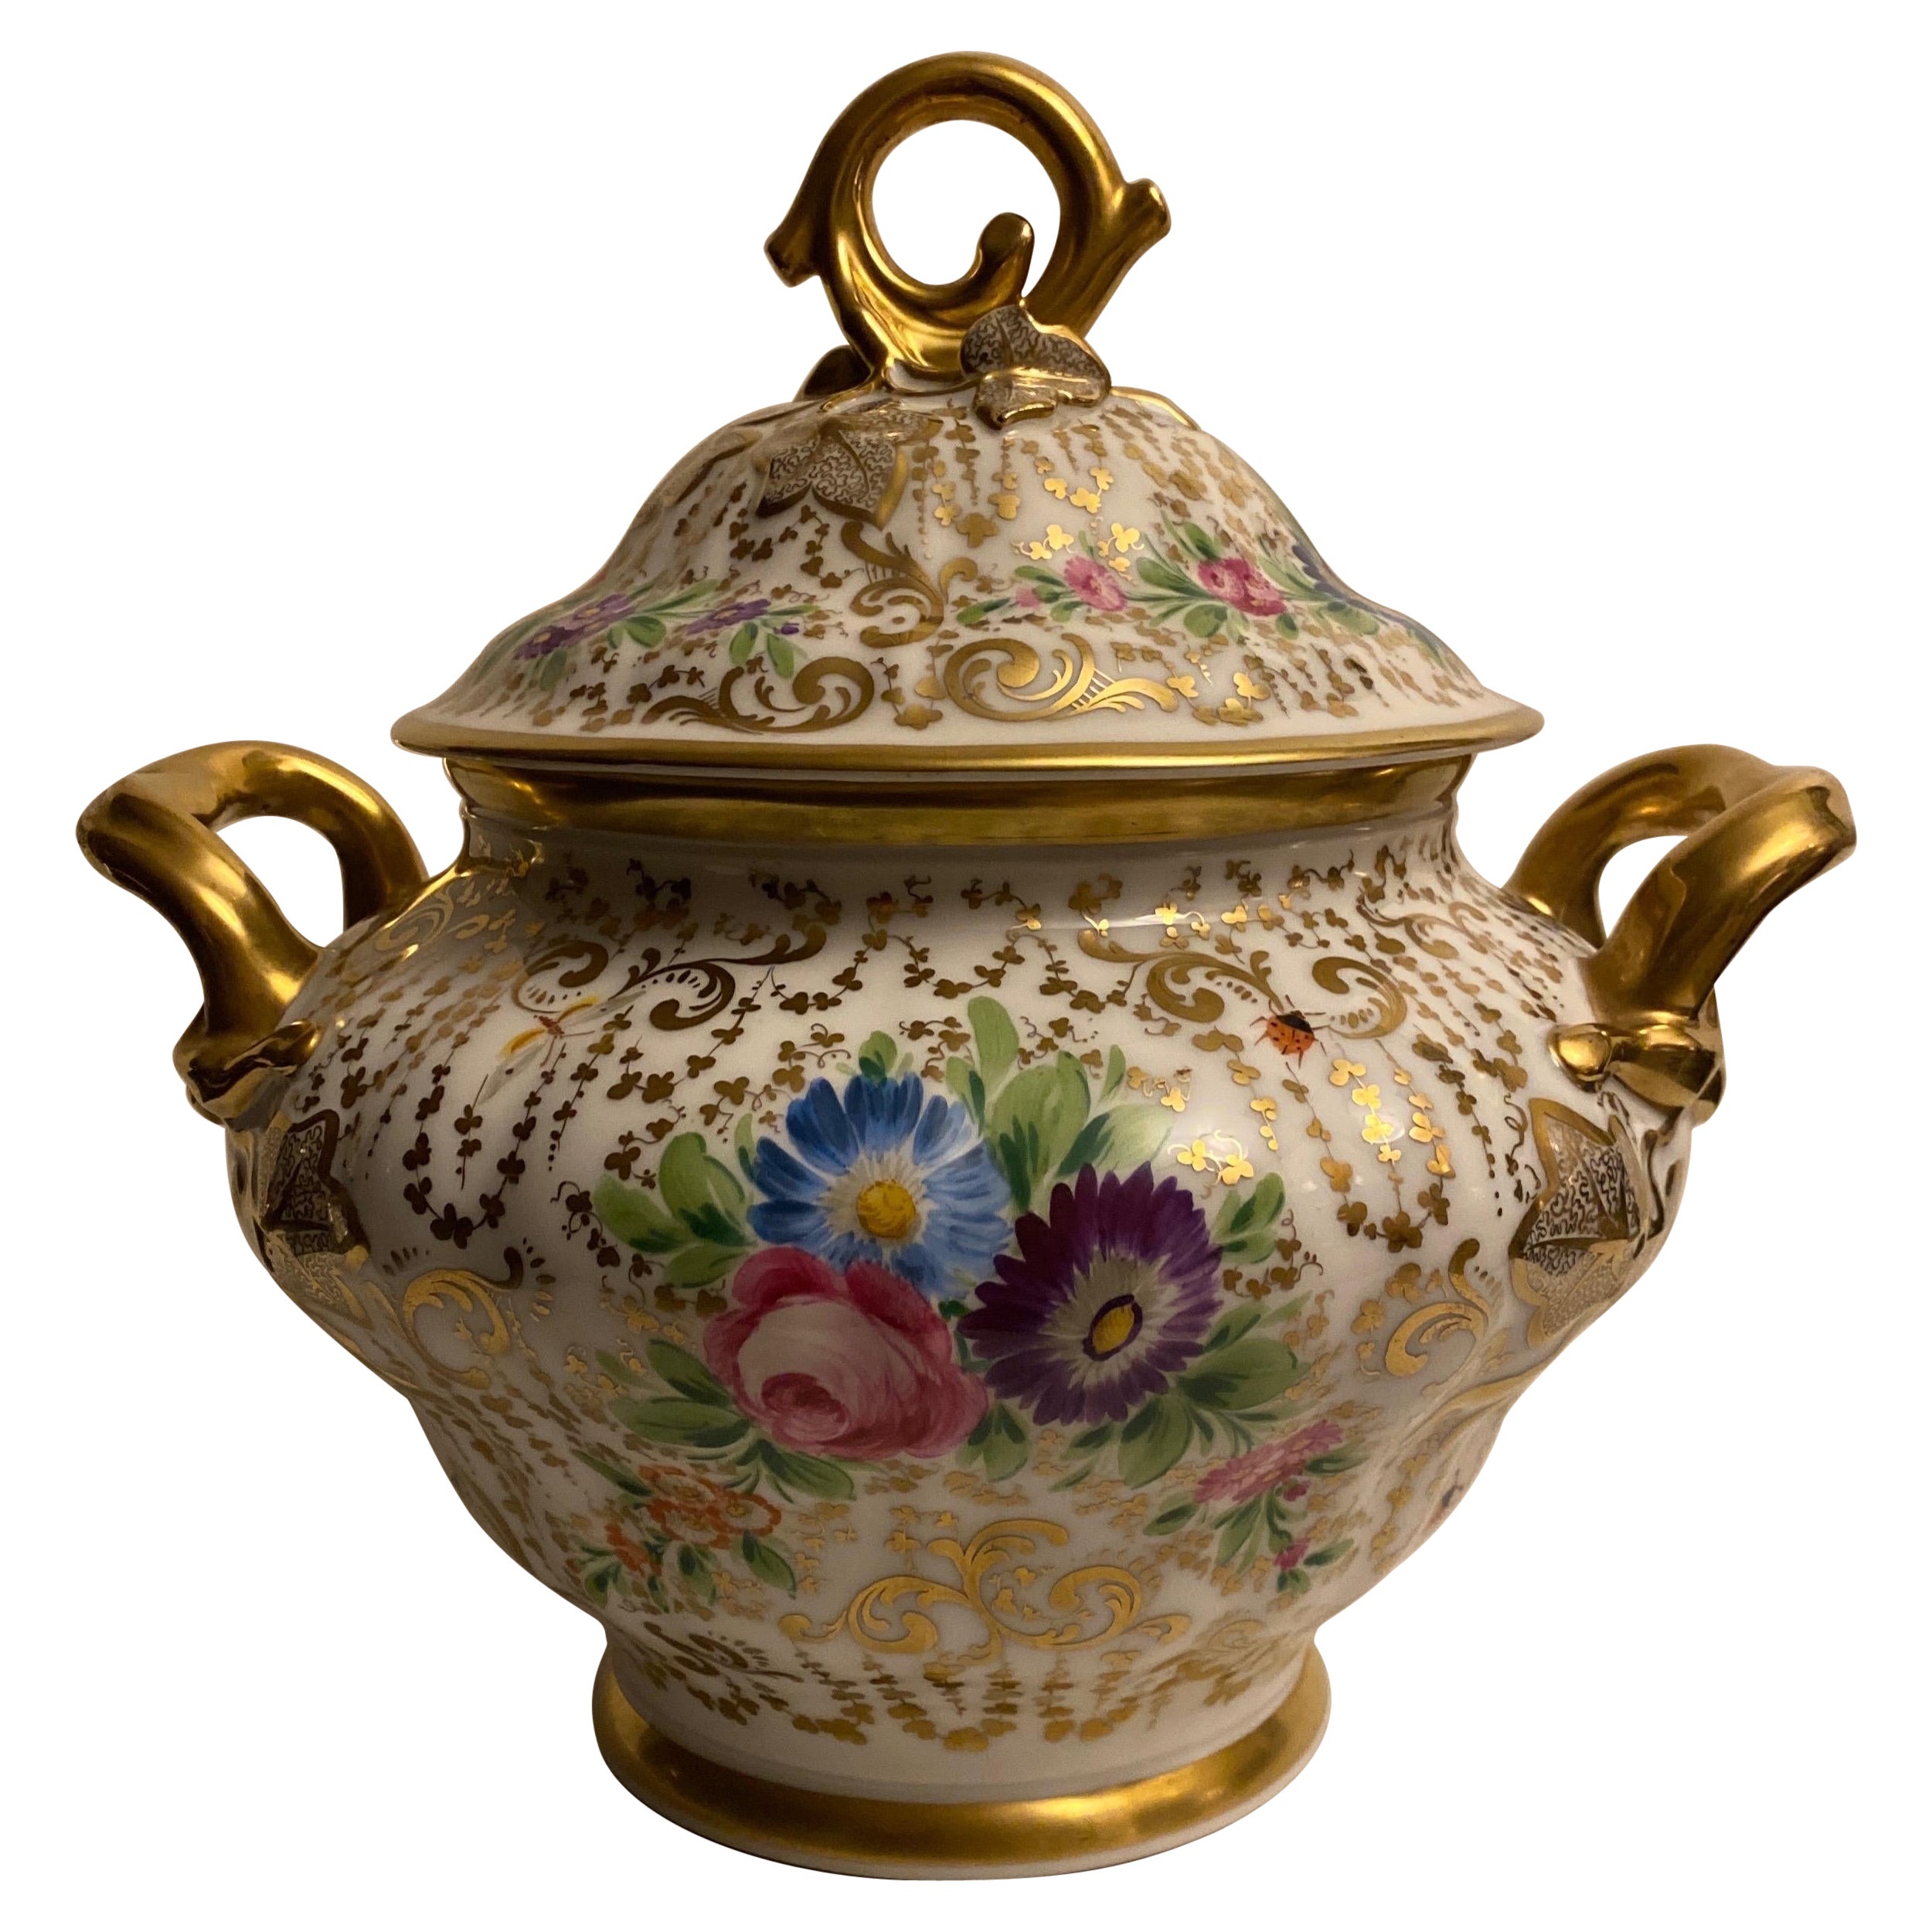 Soupière centrale ancienne du 19ème siècle peinte et recouverte de porcelaine dorée, soupière